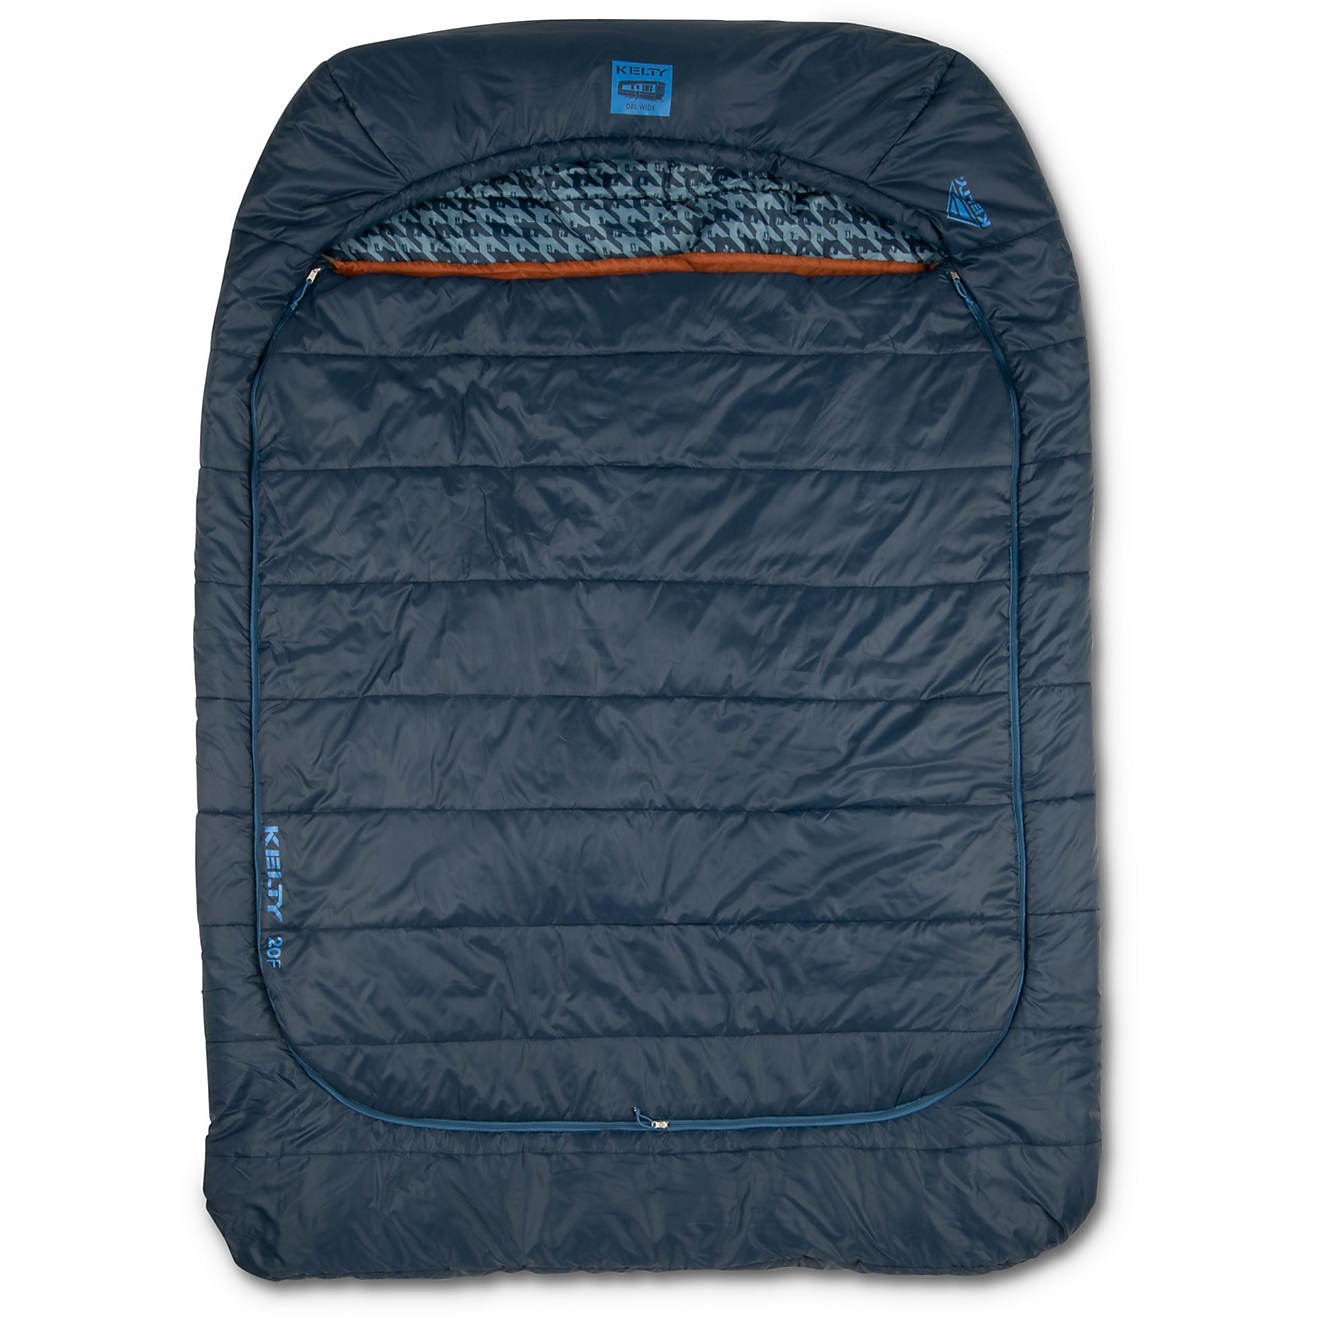 Kelty Tru Comfort Doublewide 20D Regular Sleeping Bag                                                                            - view number 1